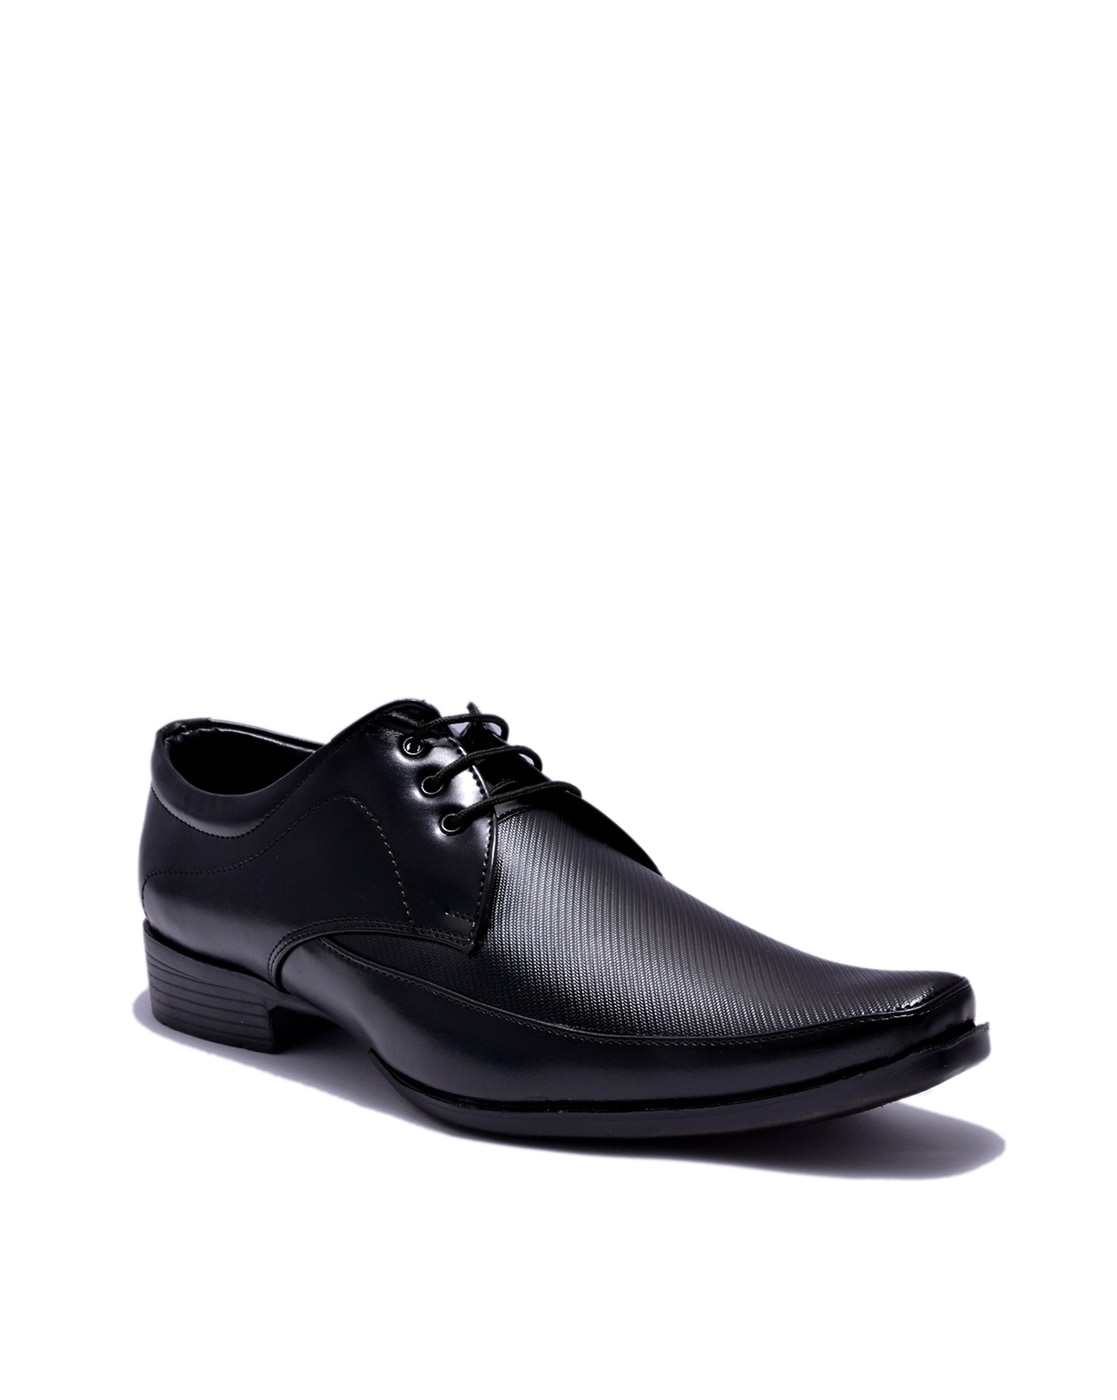 buy black formal shoes